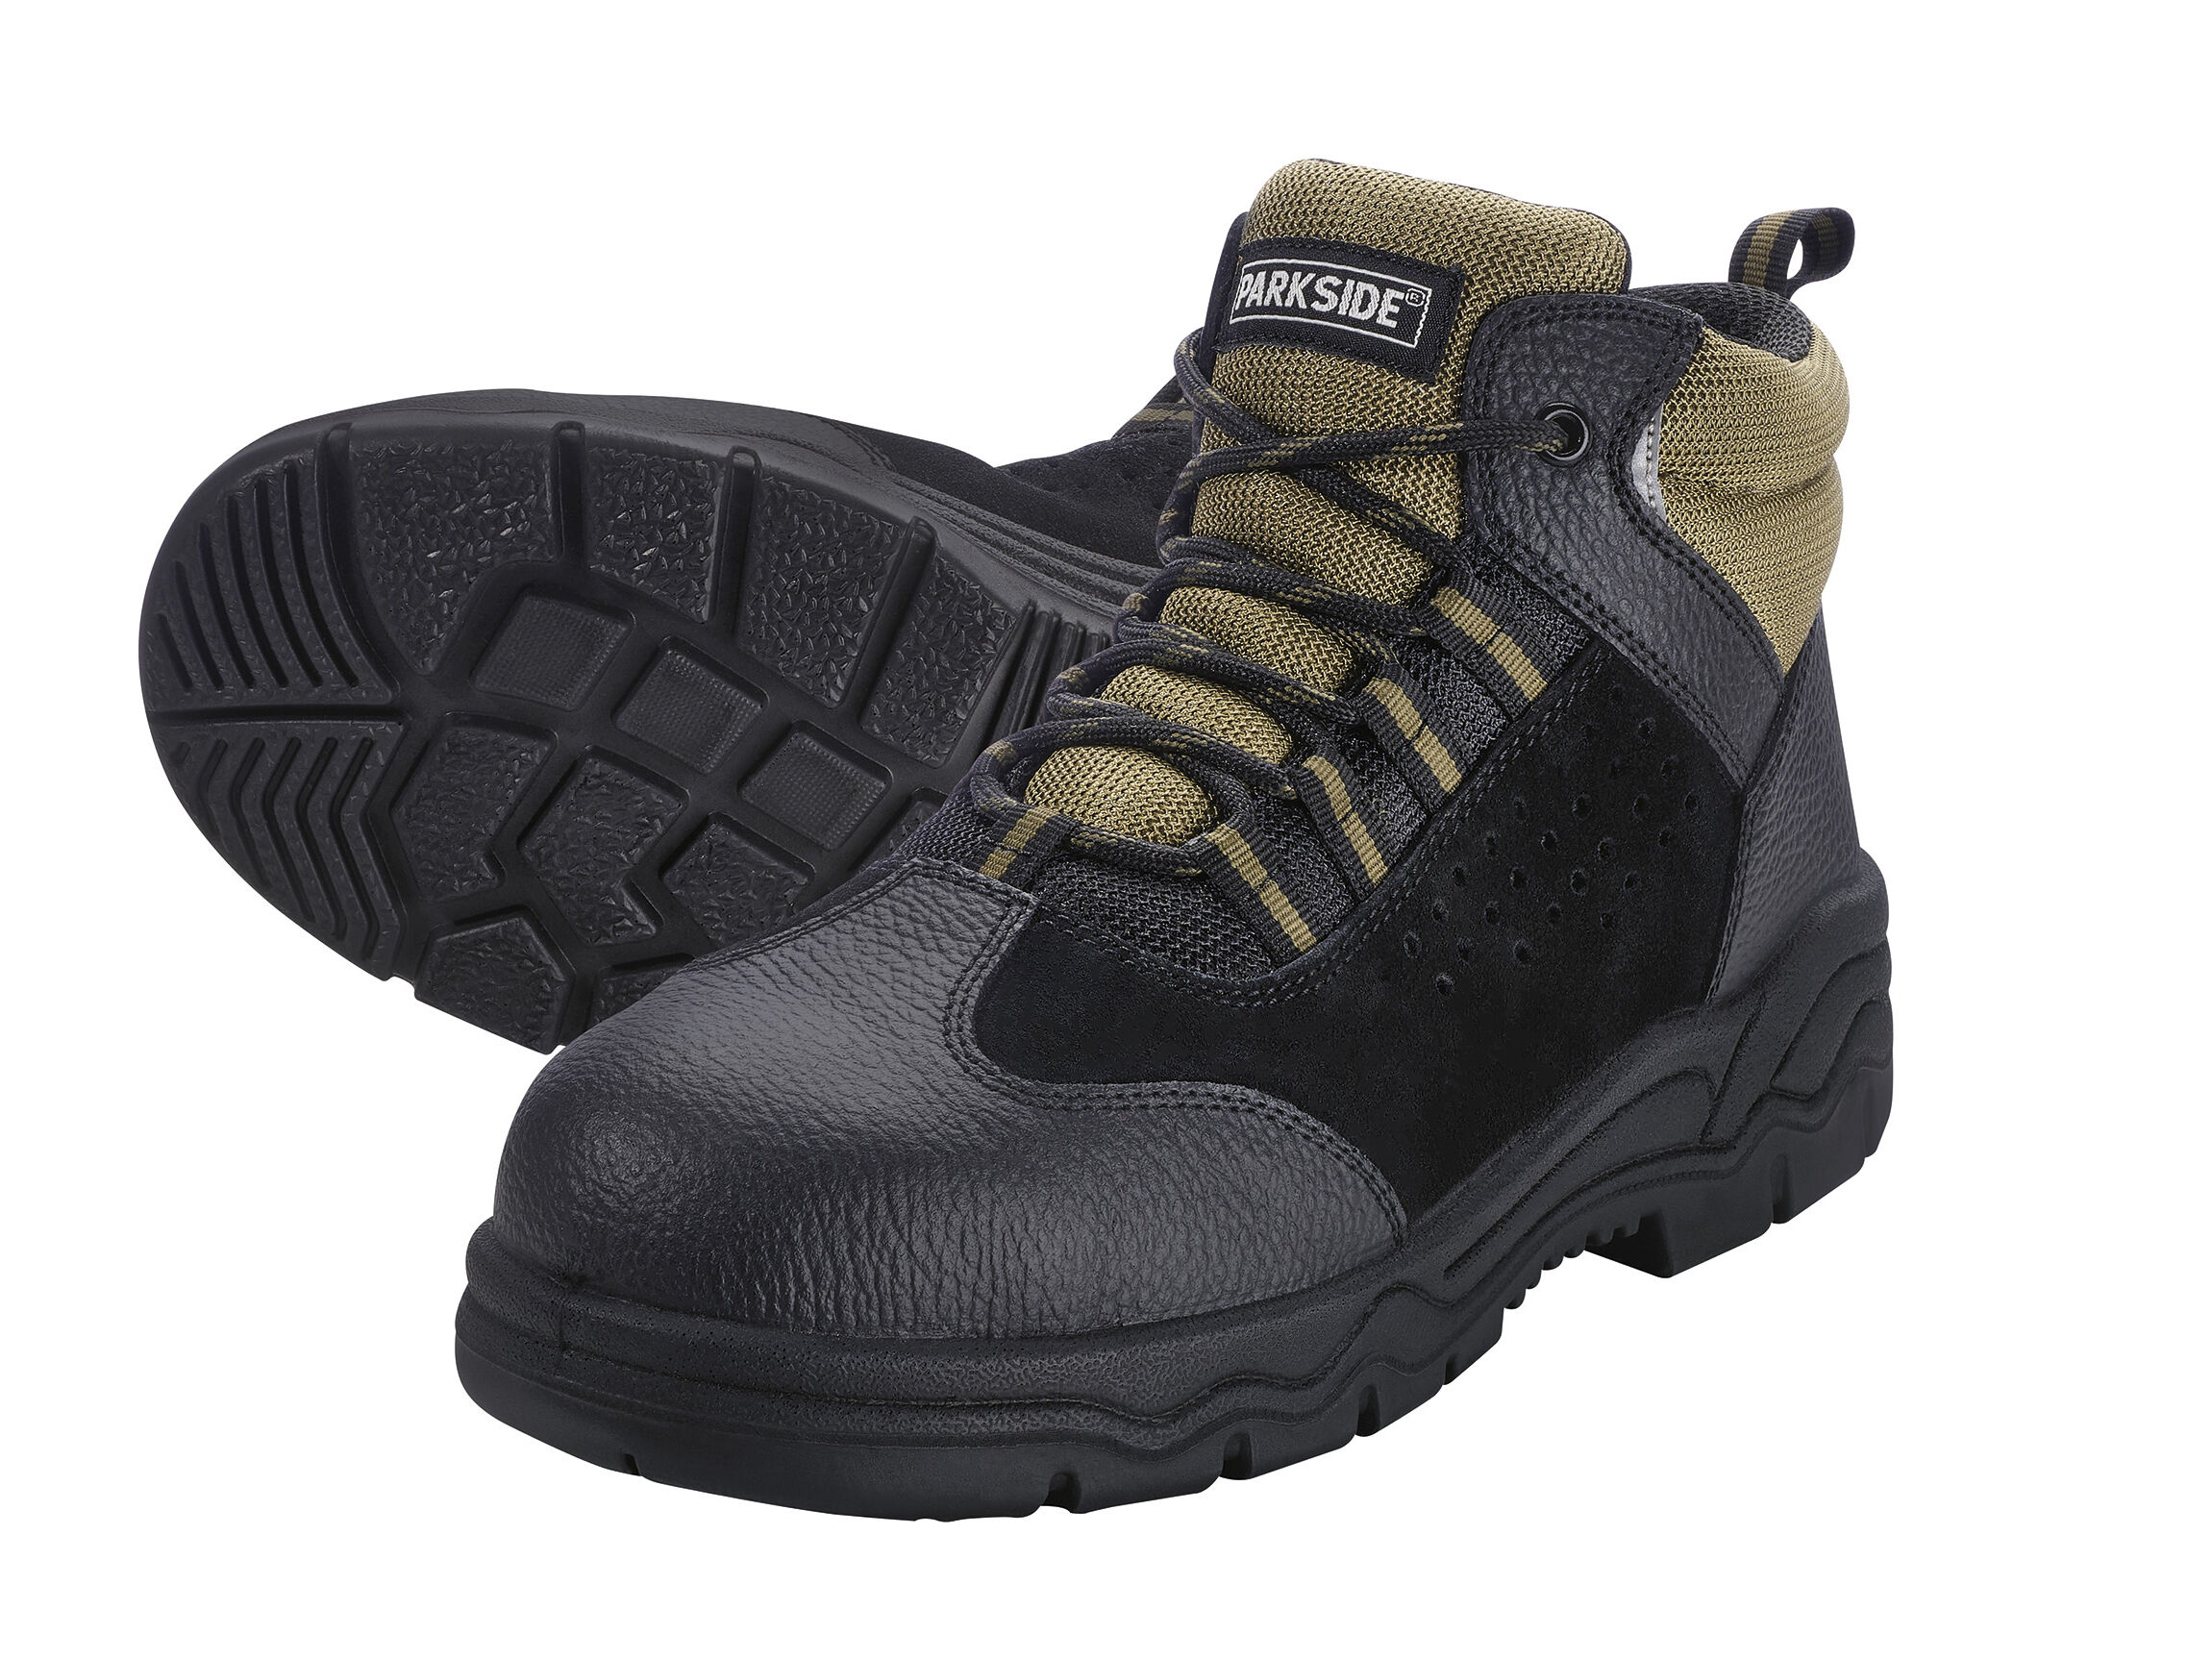 PARKSIDE® Chaussures de sécurité homme S3 (46, noir/kaki)